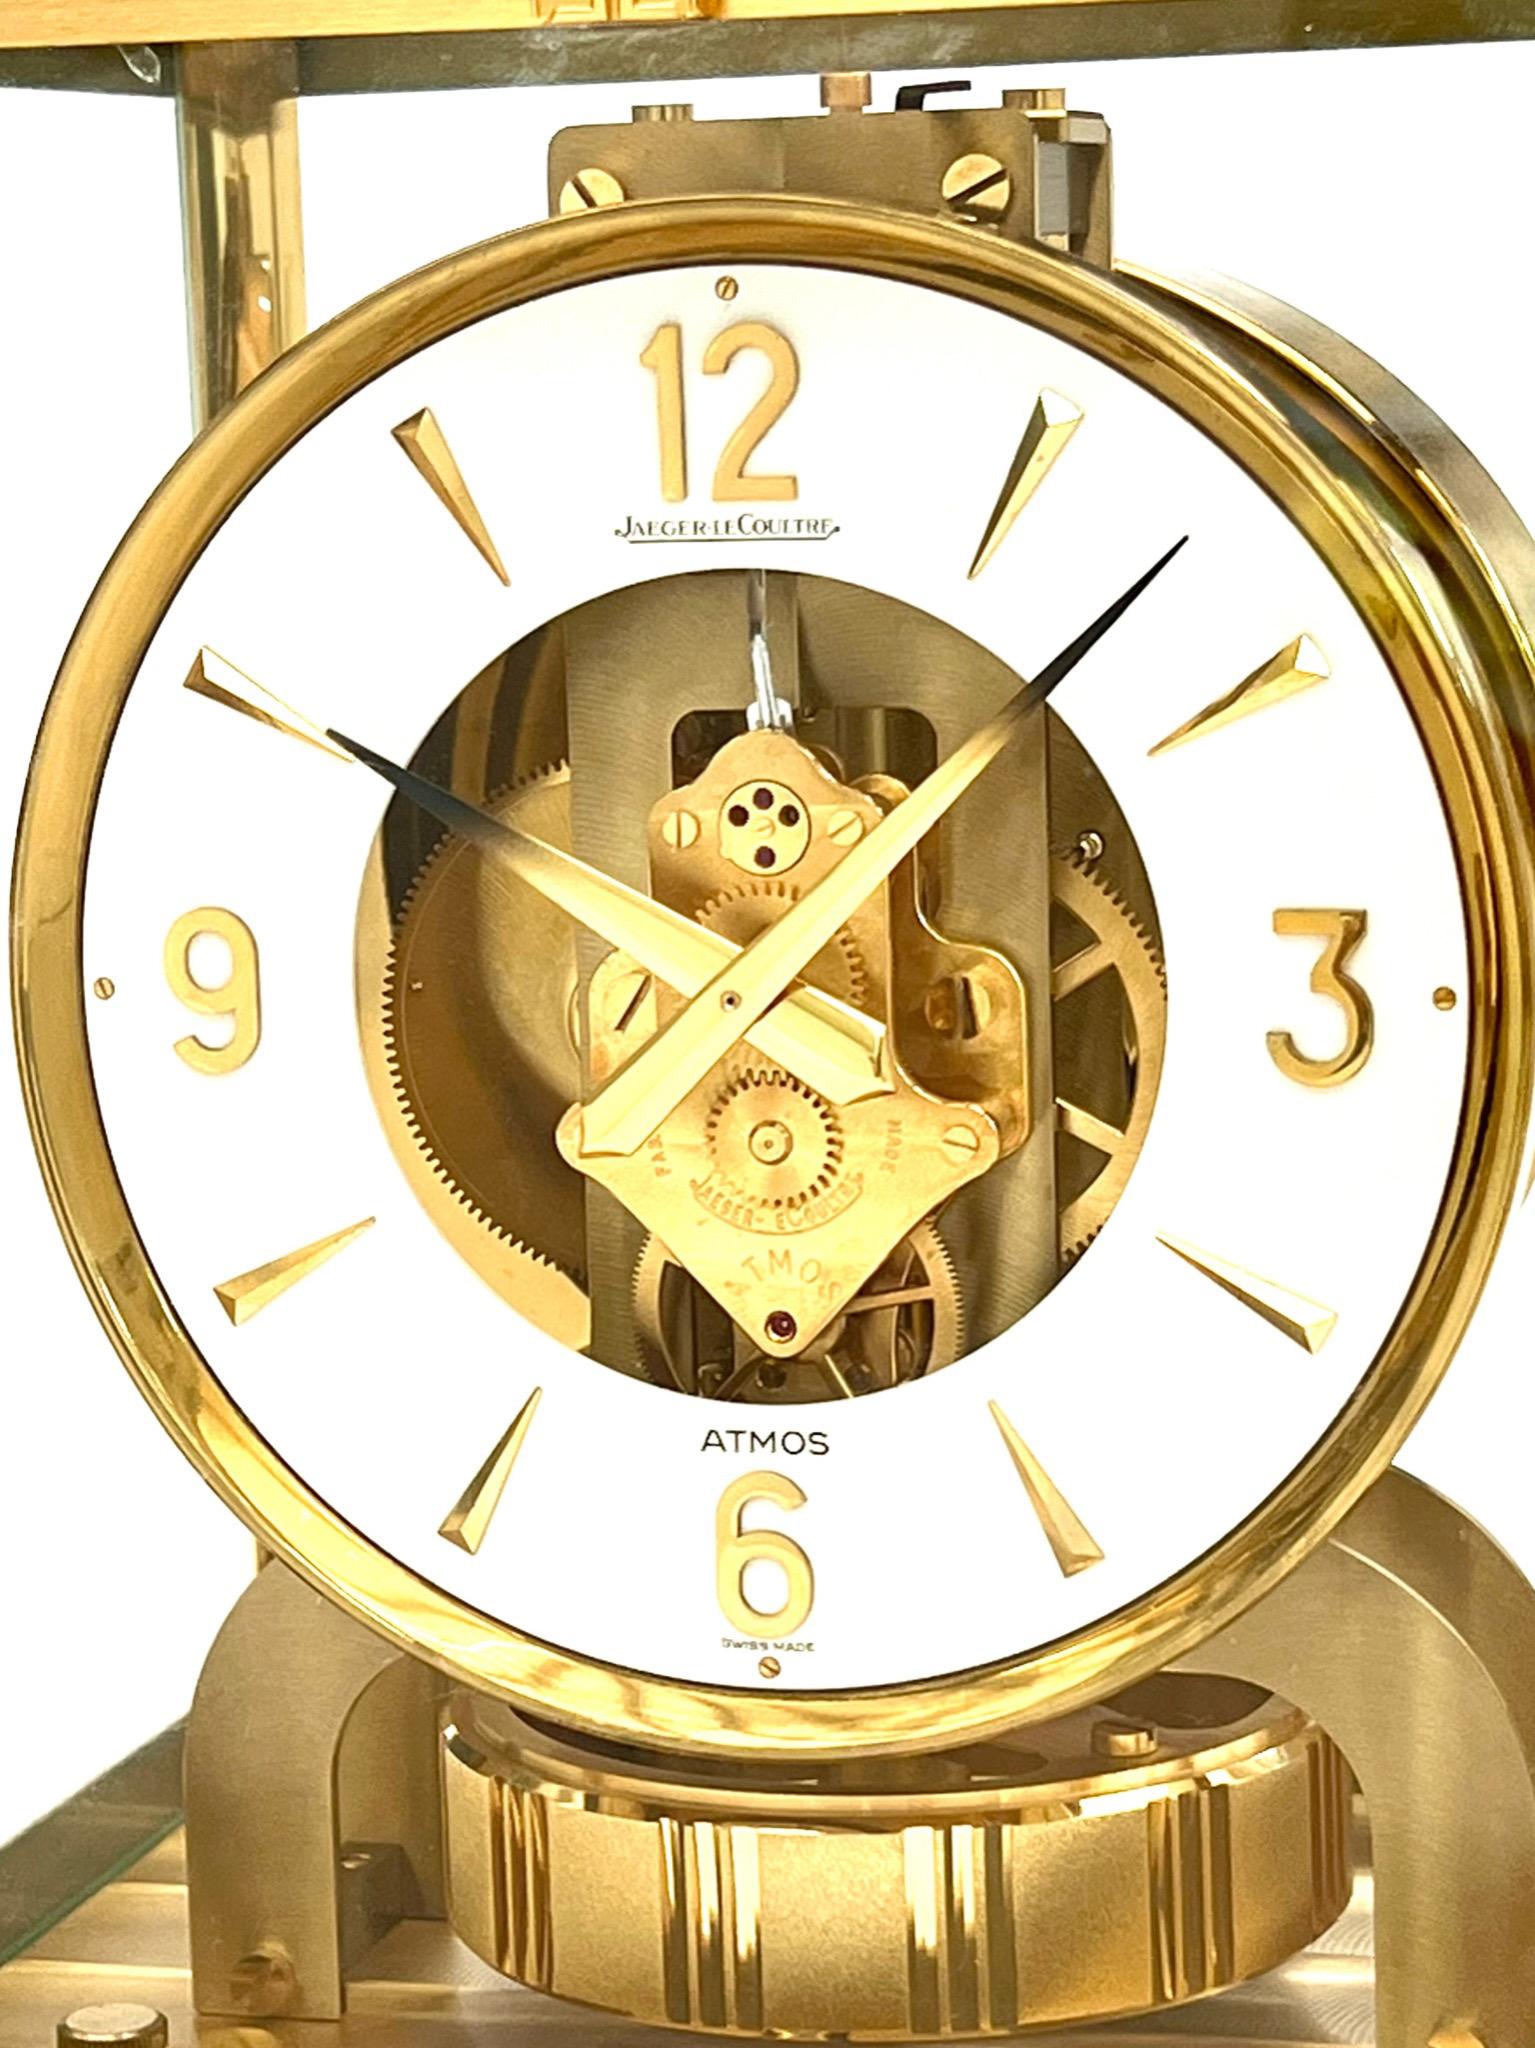 Superbe horloge Atmos de Jaeger-LeCoultre, modèle 528-8 à cadran circulaire, datant du milieu du siècle dernier. Dans son boîtier en verre, le design unique de l'horloge Atmos permet au propriétaire de voir la complexité de la machinerie sous tous